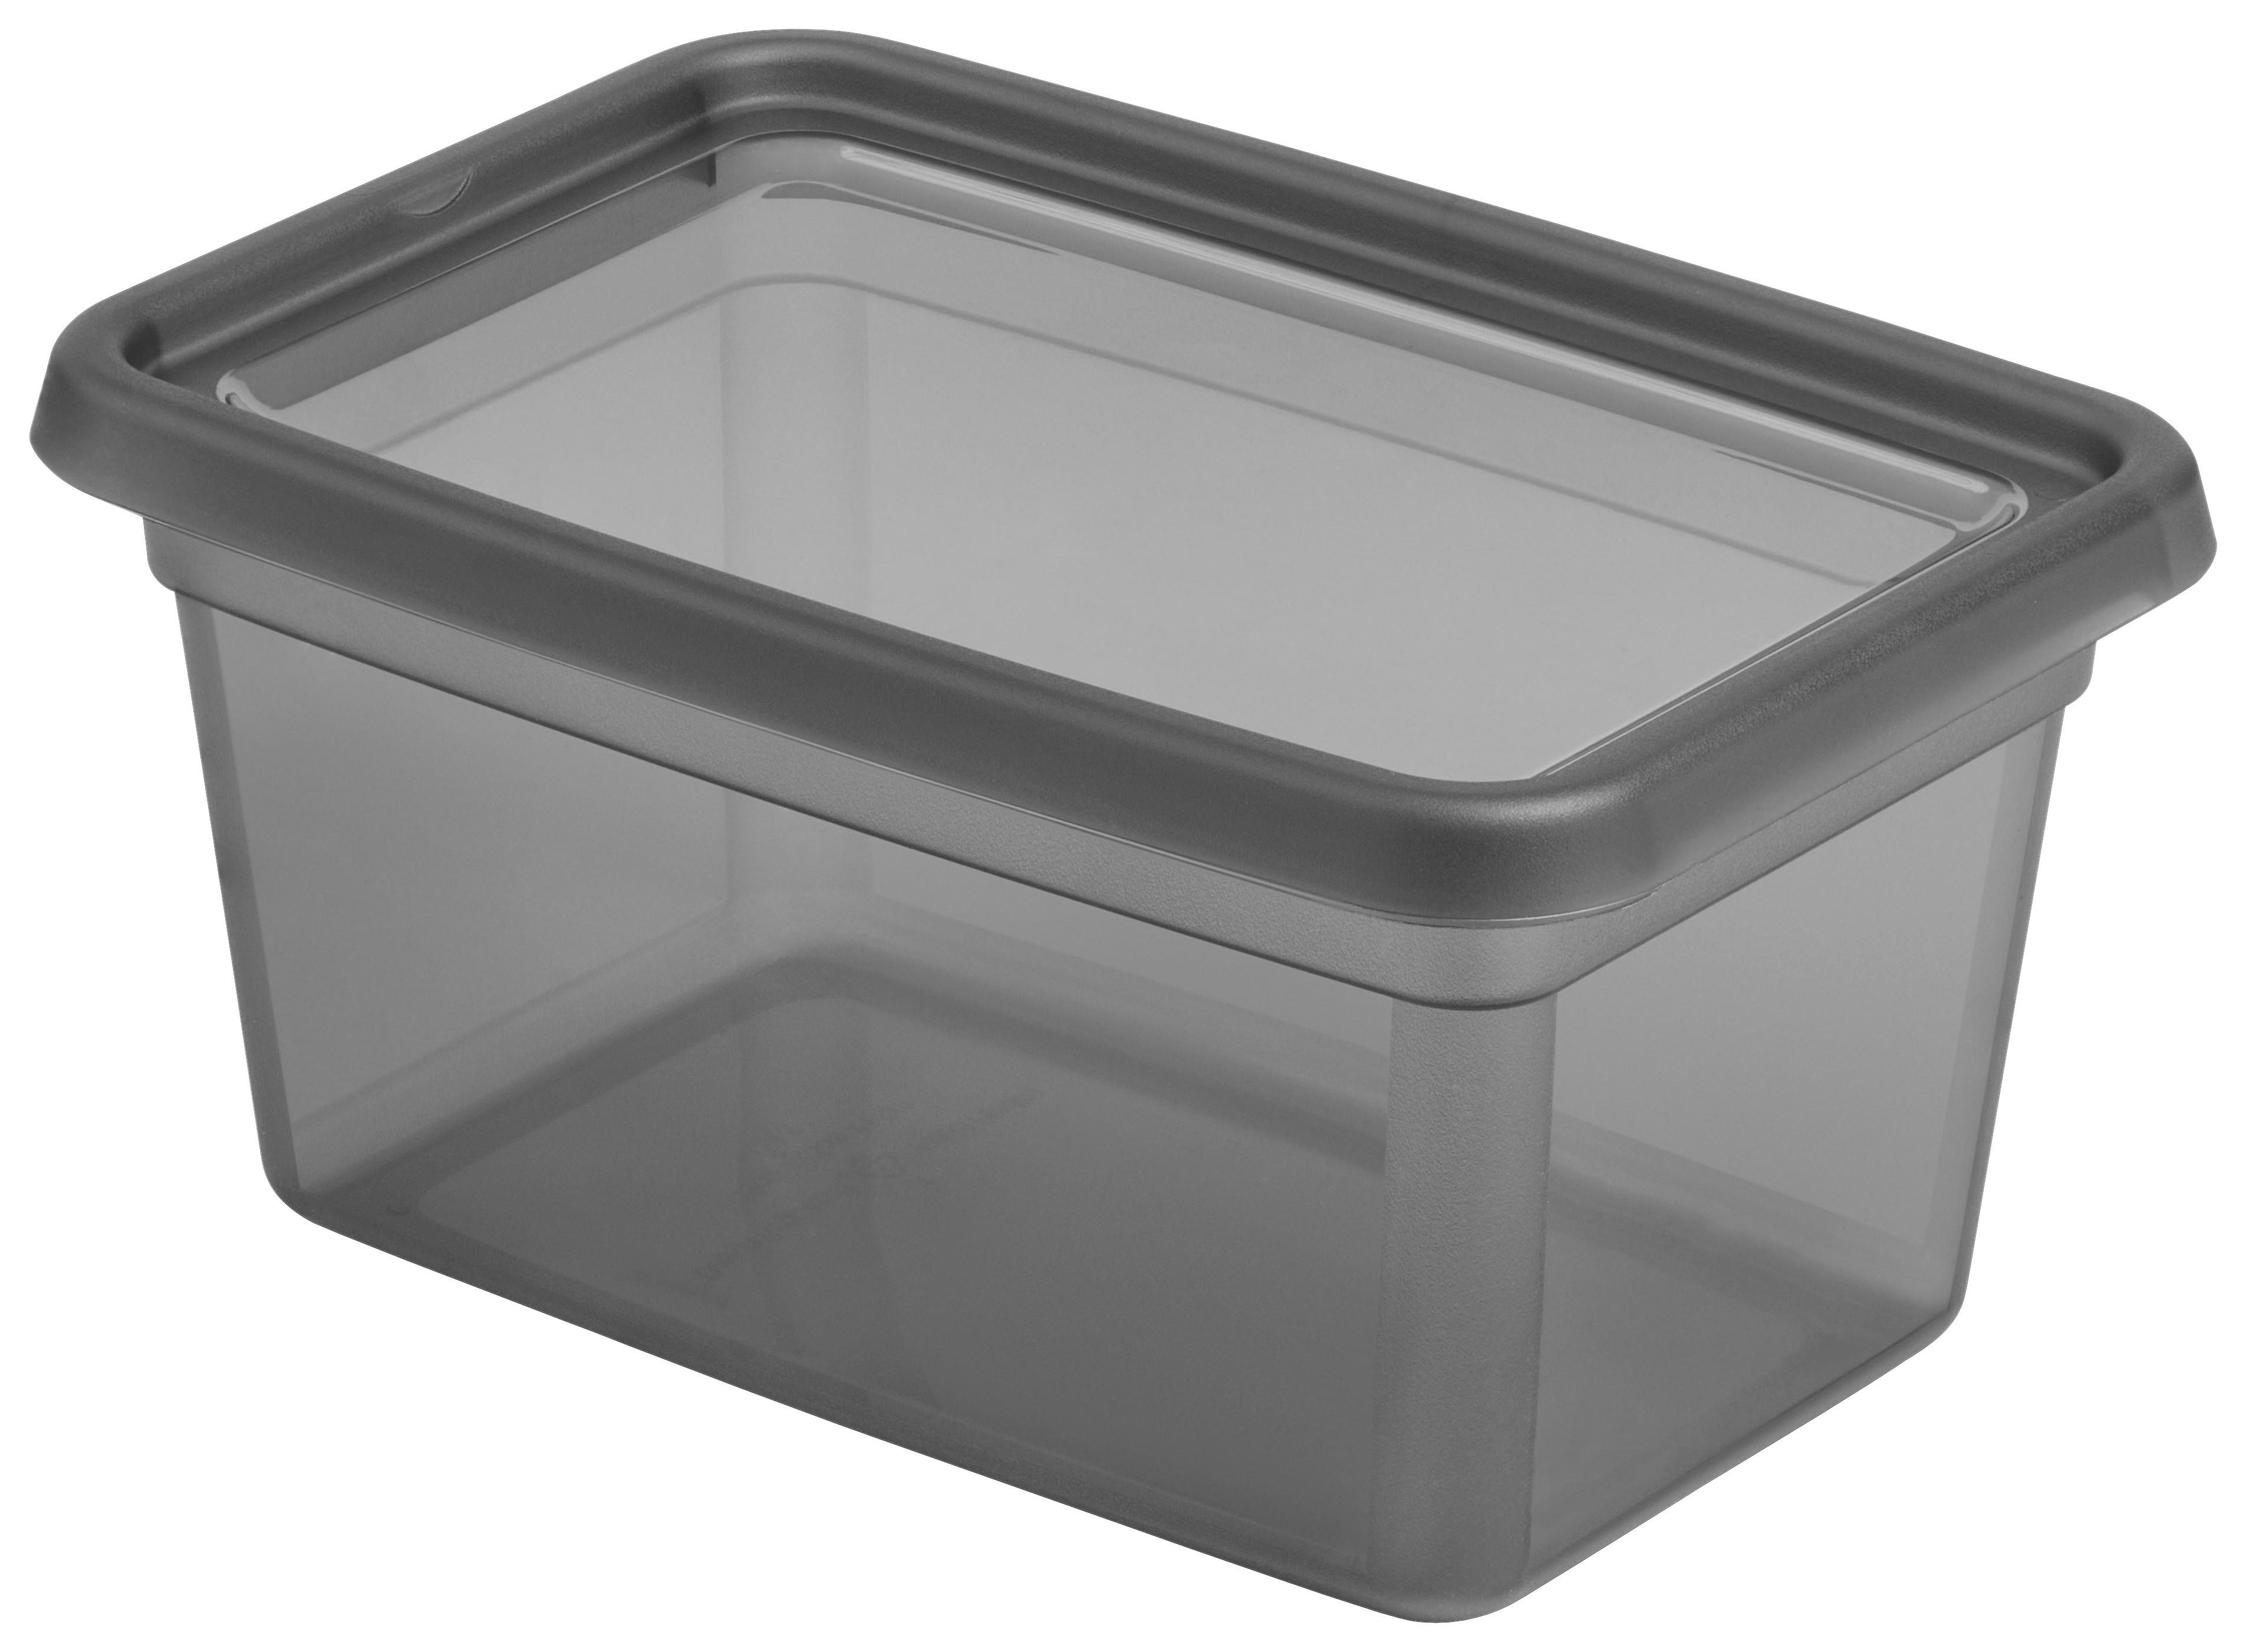 Aufbewahrungsbox Blacky in Schwarz ca. 4,5l - Transparent/Schwarz, Modern, Kunststoff (19/28/14cm) - Premium Living